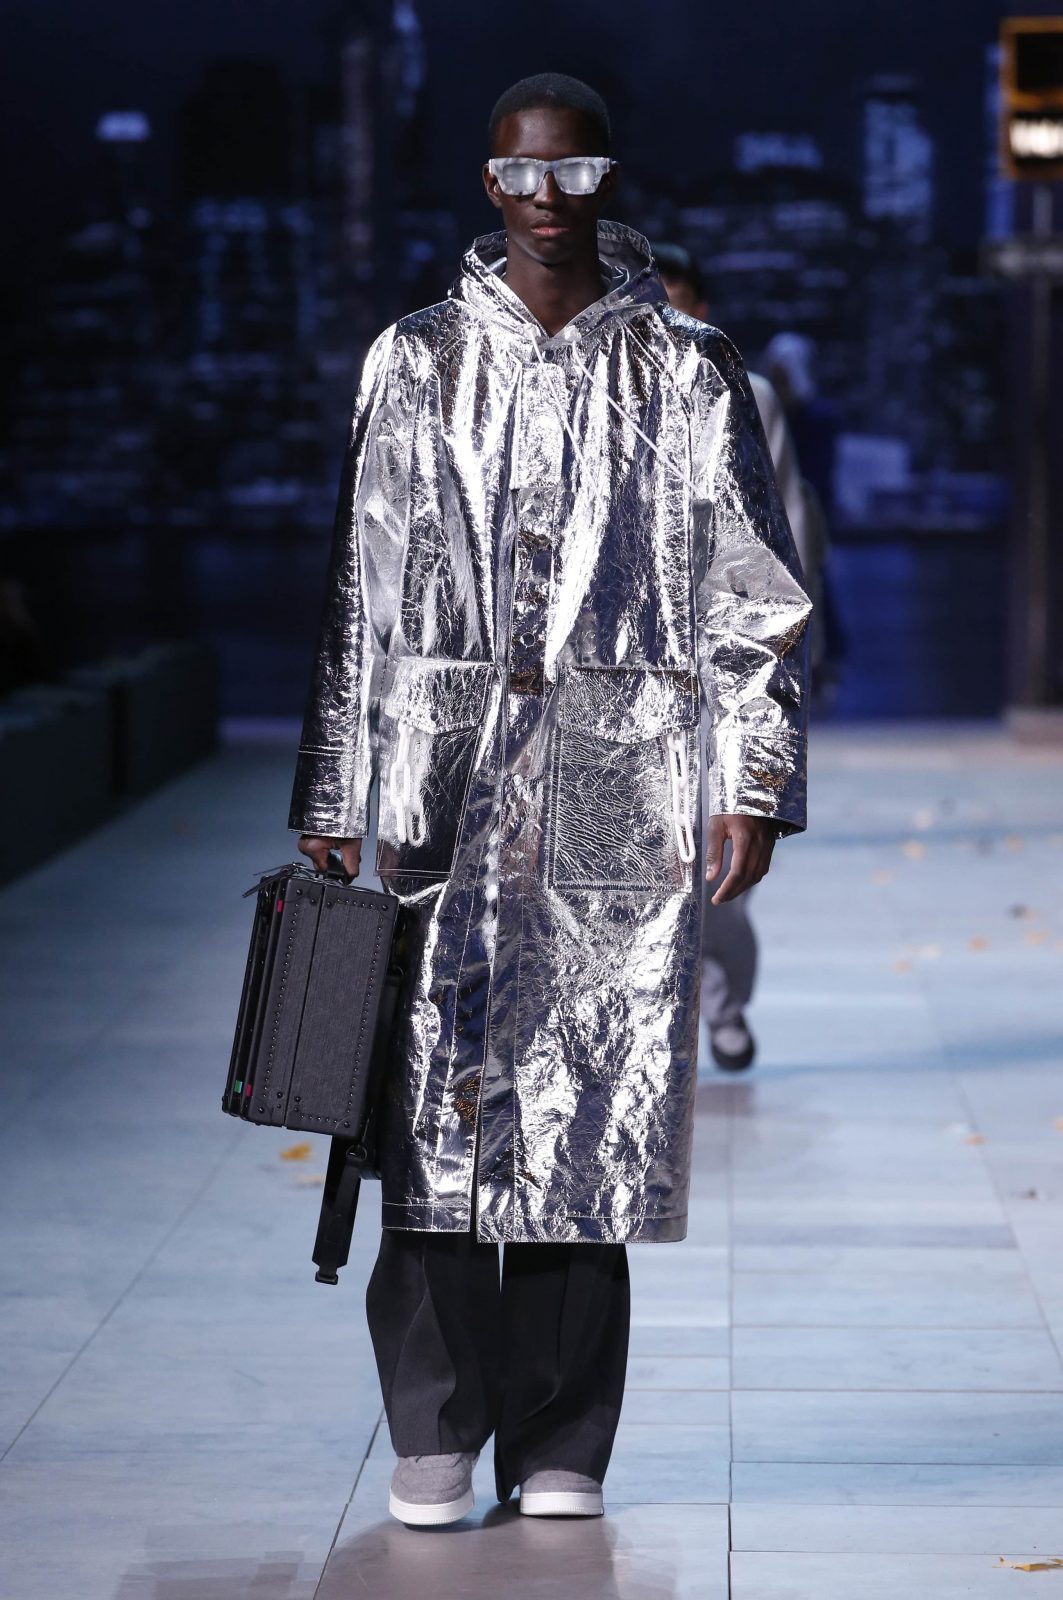 Louis Vuitton men's fall winter residency